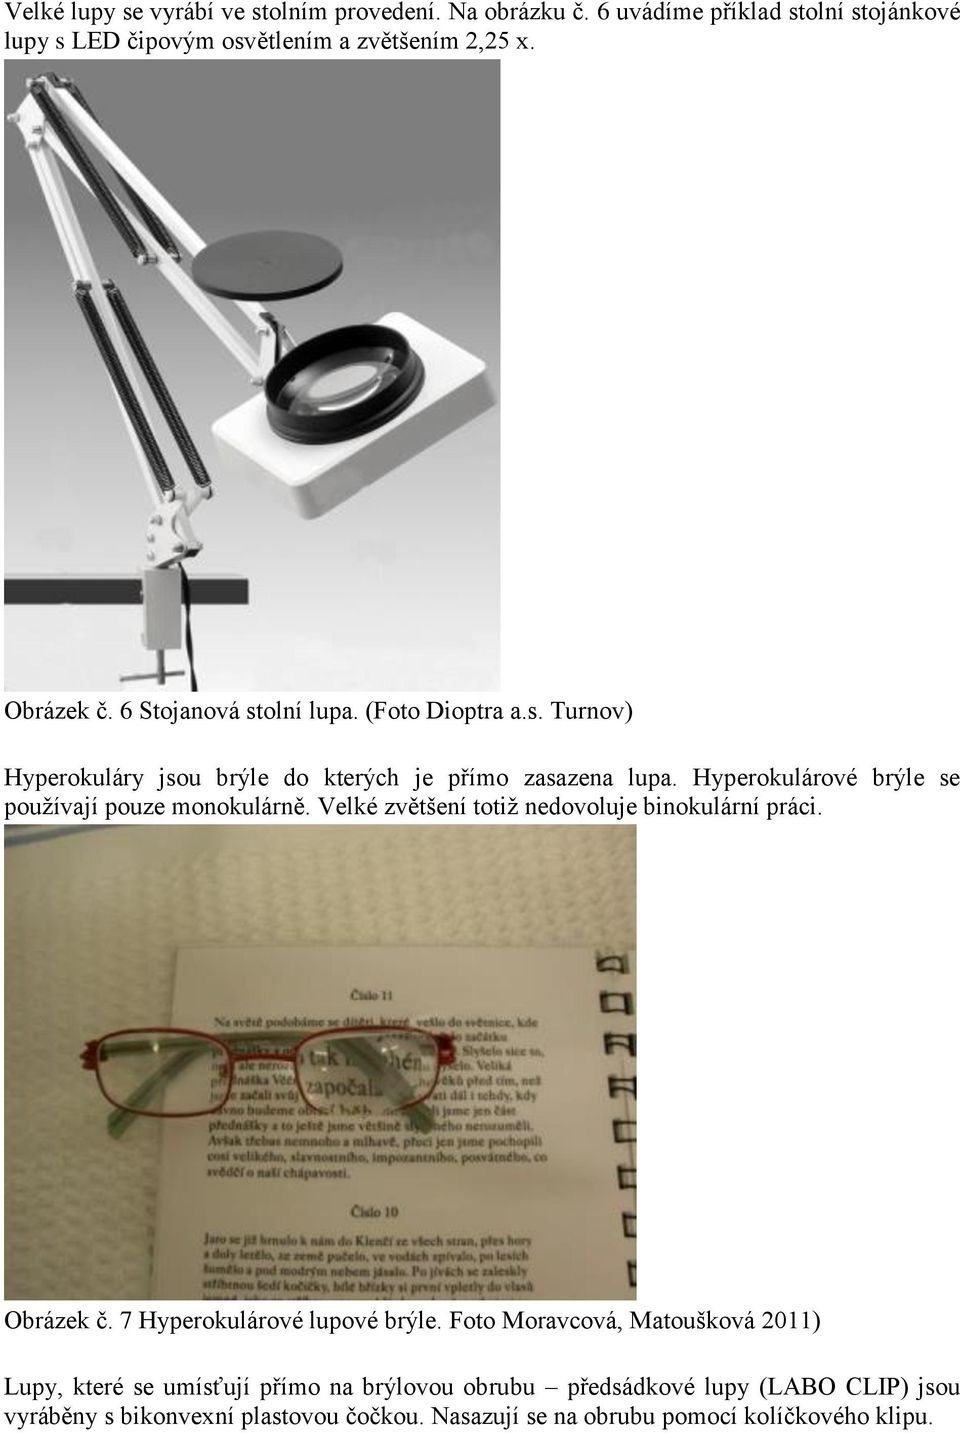 Hyperokulárové brýle se používají pouze monokulárně. Velké zvětšení totiž nedovoluje binokulární práci. Obrázek č. 7 Hyperokulárové lupové brýle.